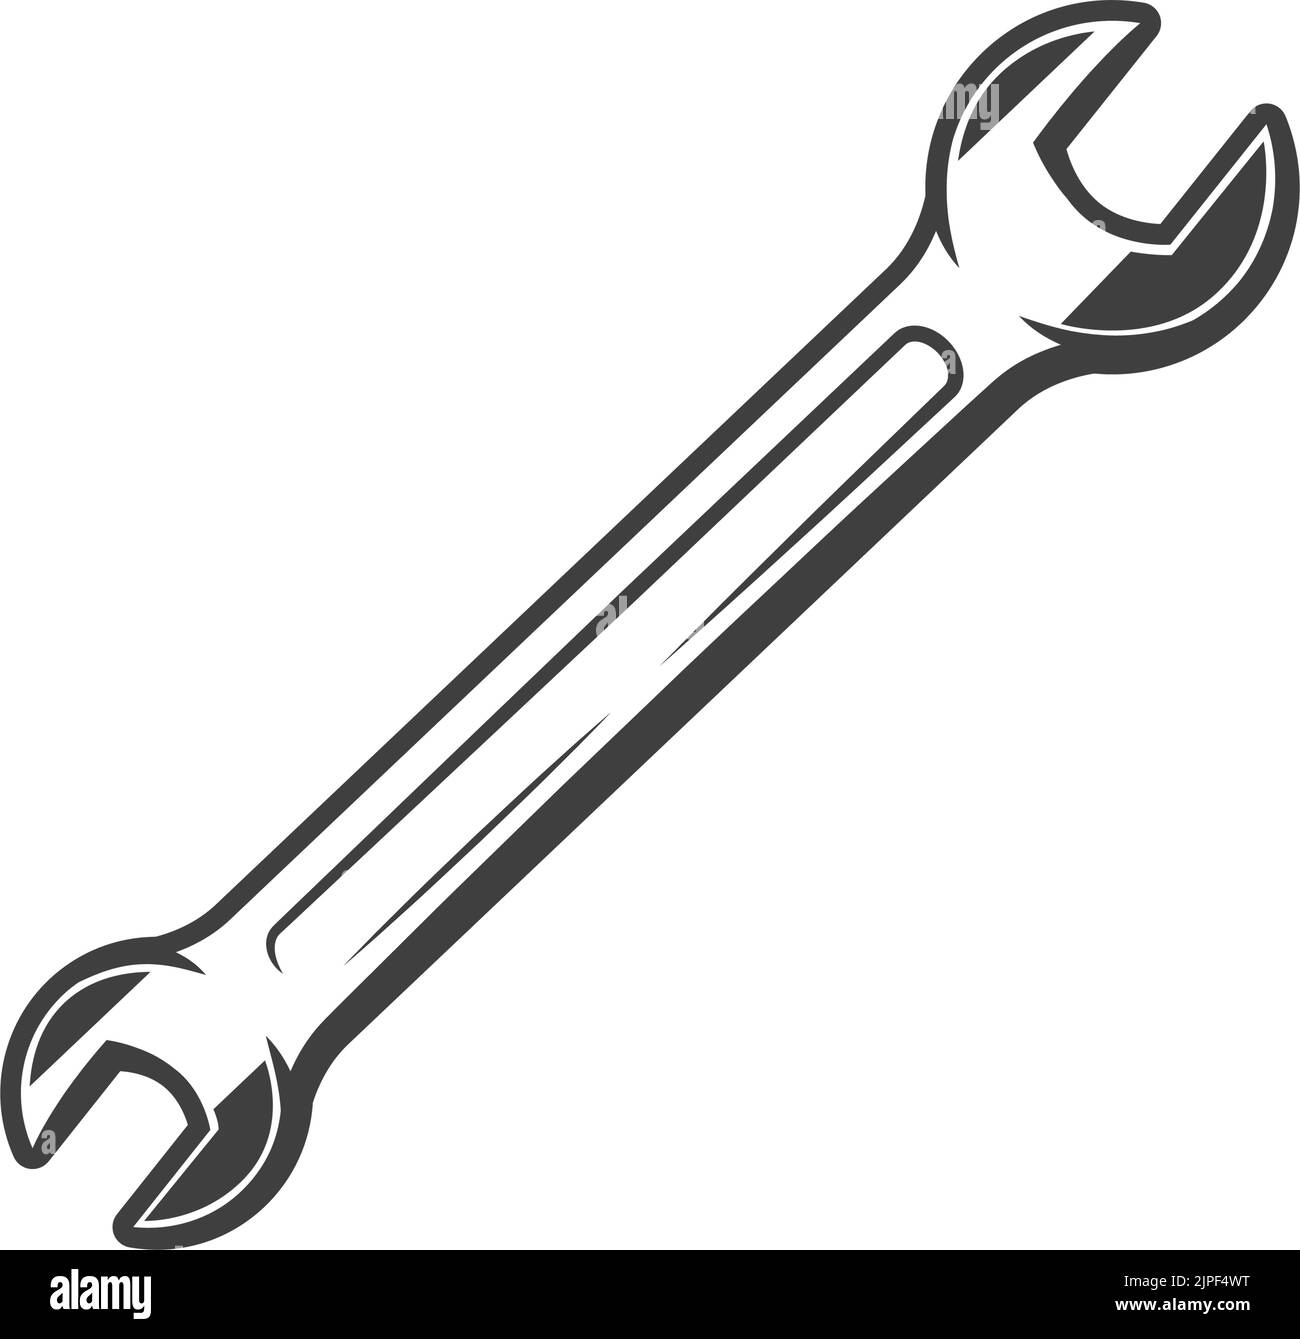 Werkzeugsymbol für Kfz-Schraubenschlüssel. Vector isolierter Gabelschlüssel, Fahrzeugreparaturausrüstung Stock Vektor